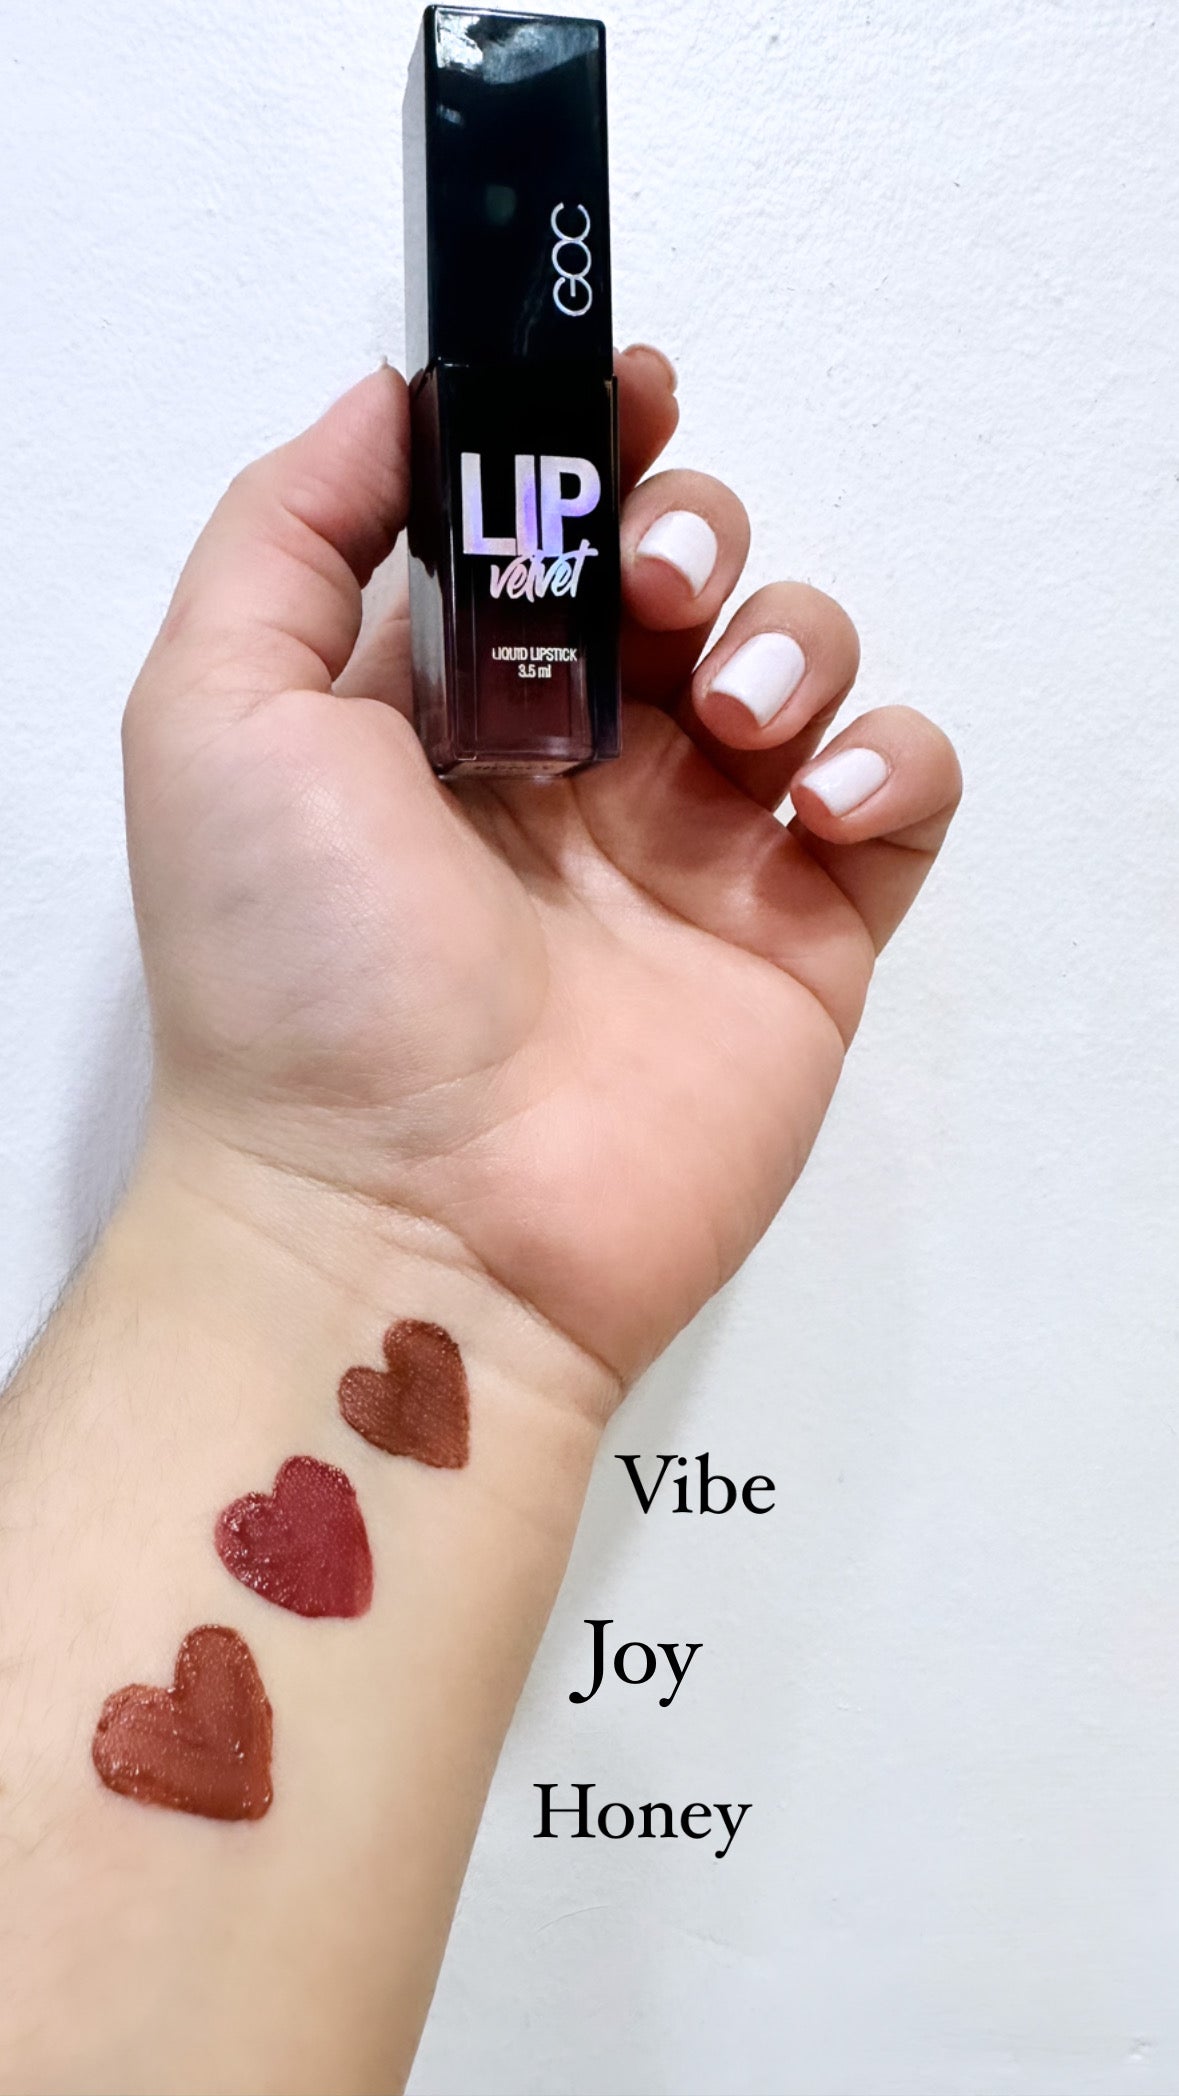 GOC Lip Velvet Lipstick